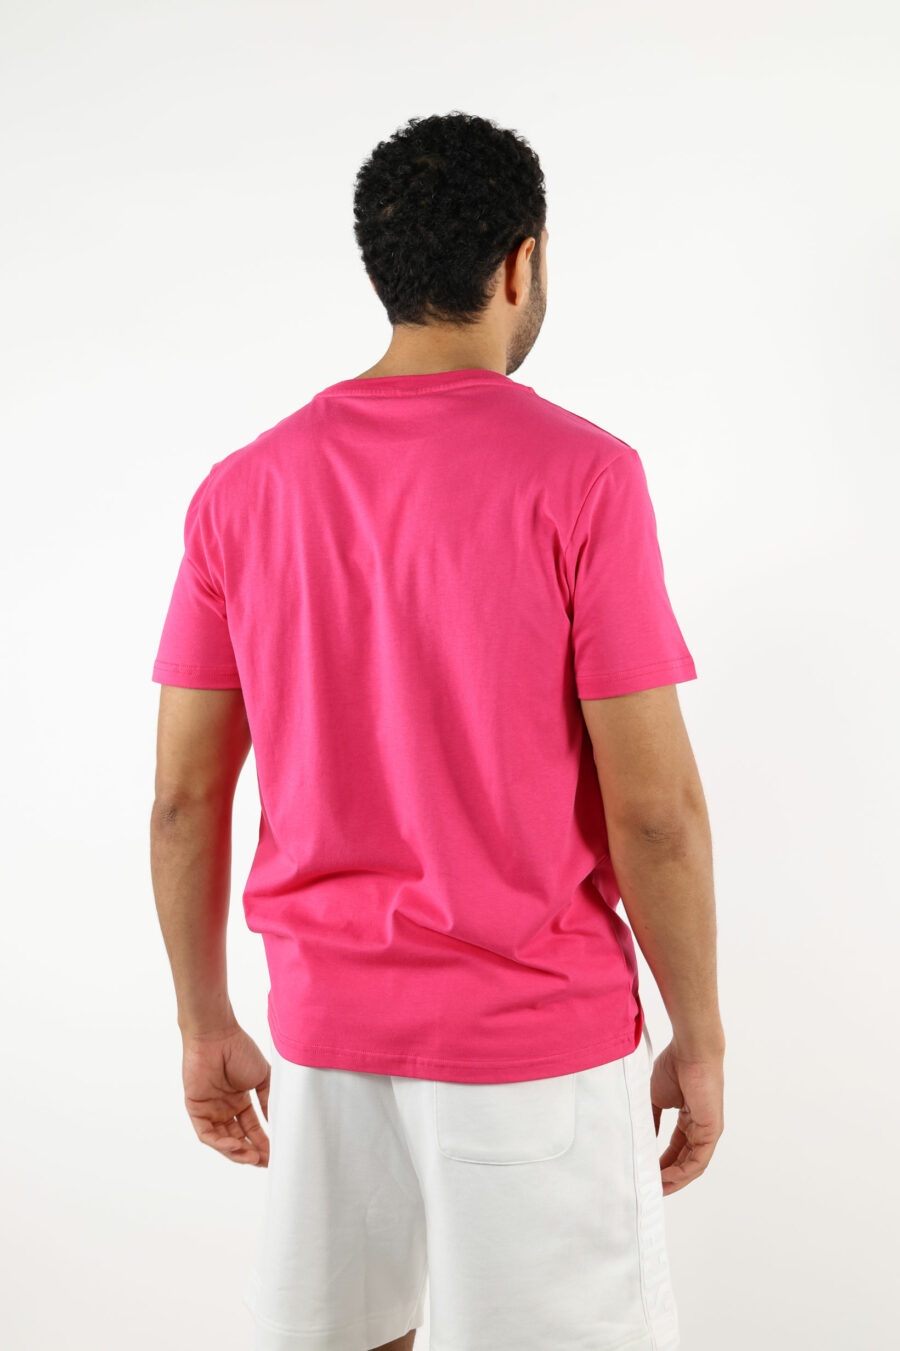 T-shirt fuchsia avec logo en caoutchouc monochrome sur les épaules - 111068